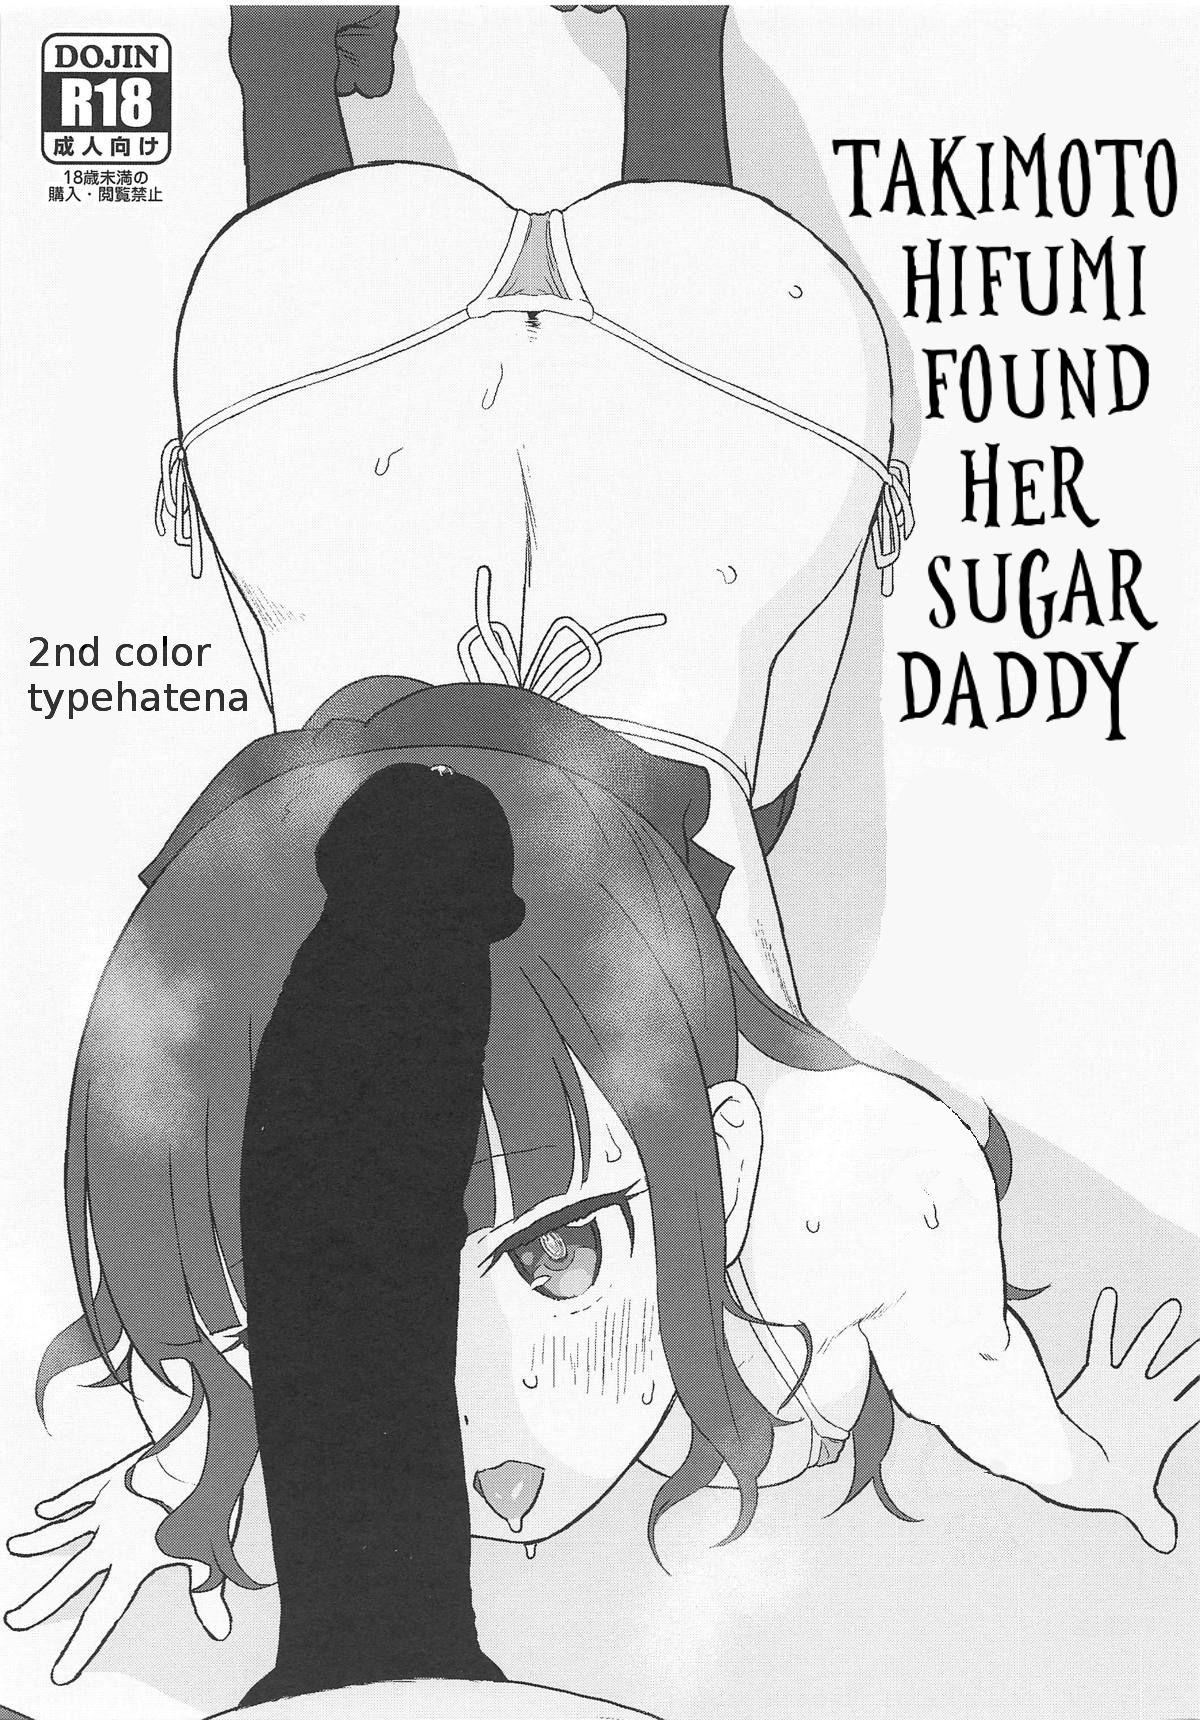 Takimoto Hifumi, "Papakatsu" Hajimemashita. | Takimoto Hifumi Found Her Sugar Daddy 0